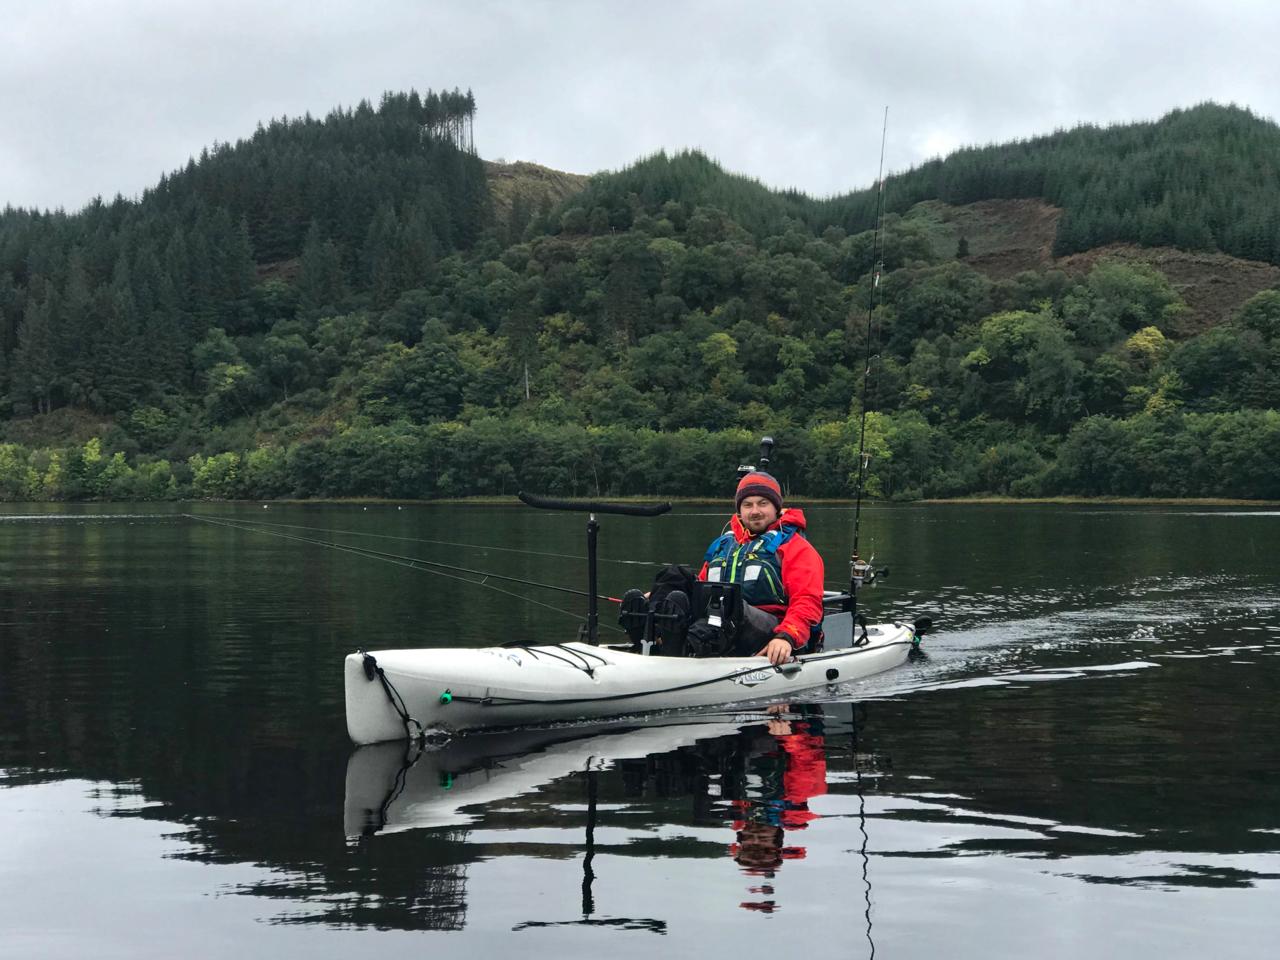 Ben kayak fishing in Scotland on his Revo 16